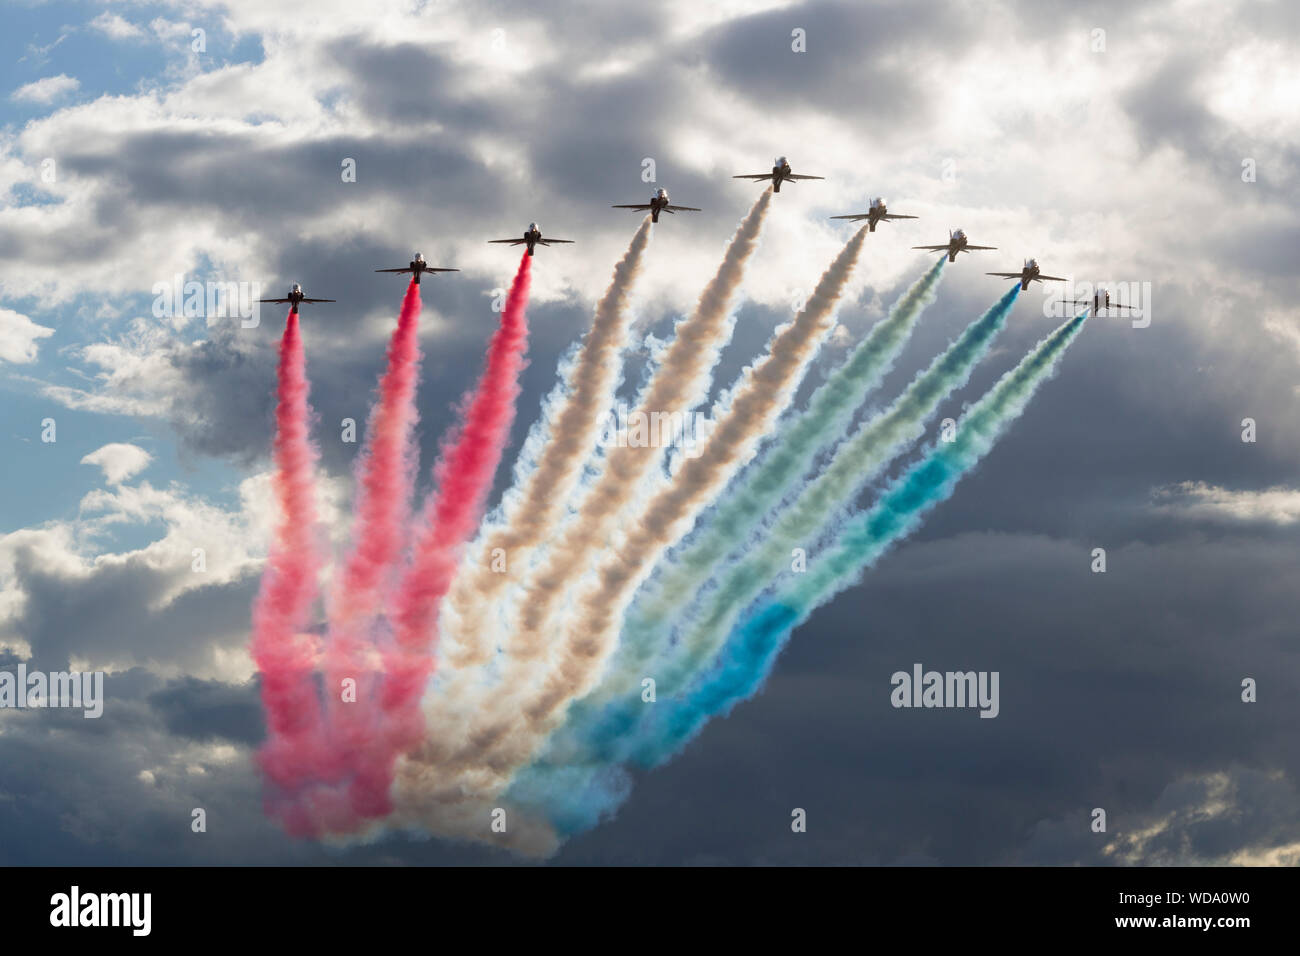 RAF Des flèches rouges, Duxford Air Show, 2013 Banque D'Images